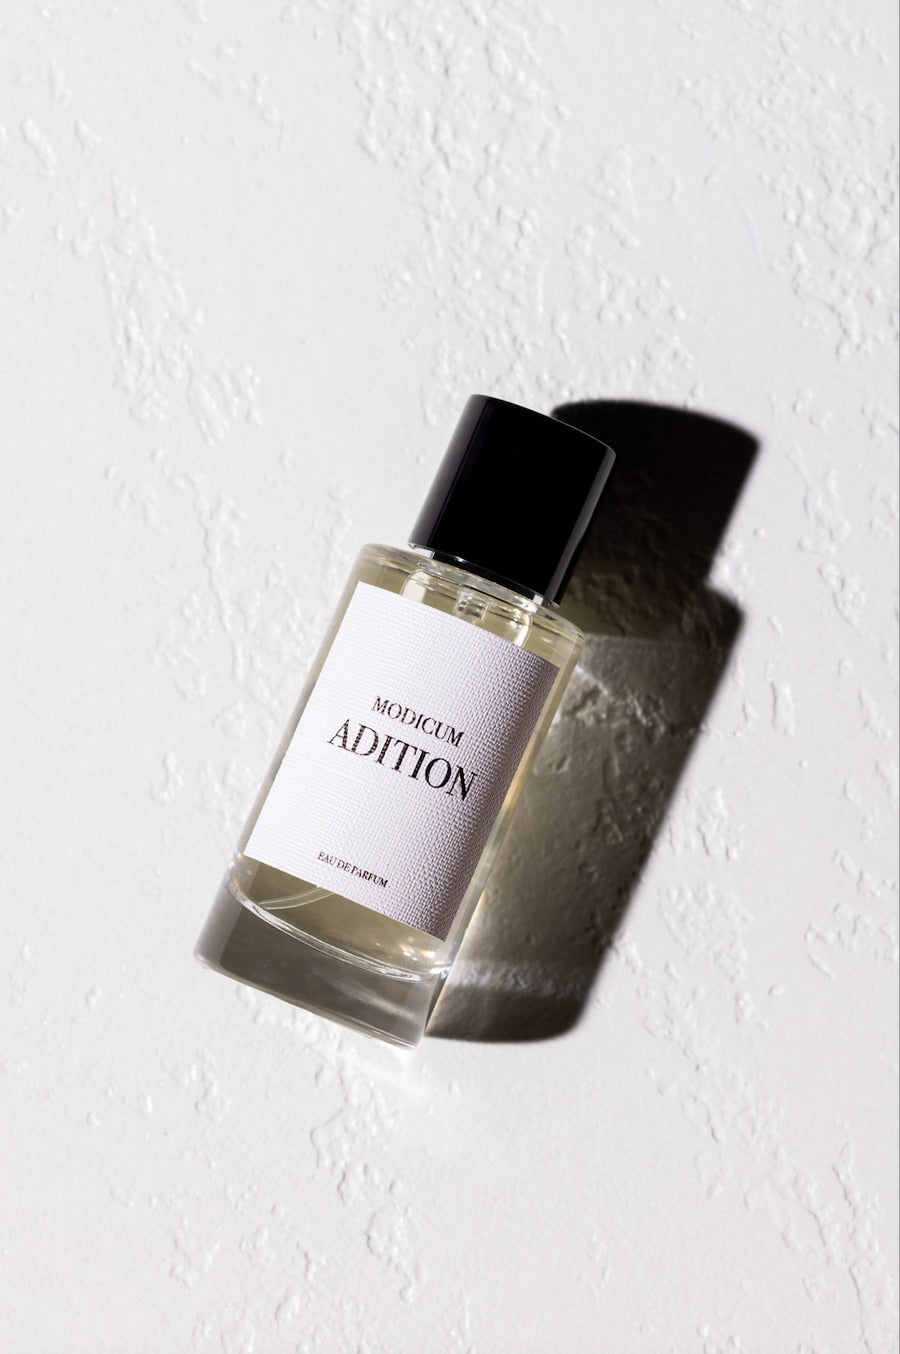 Adition Parfums | Modicum Eau De Parfum 50ml